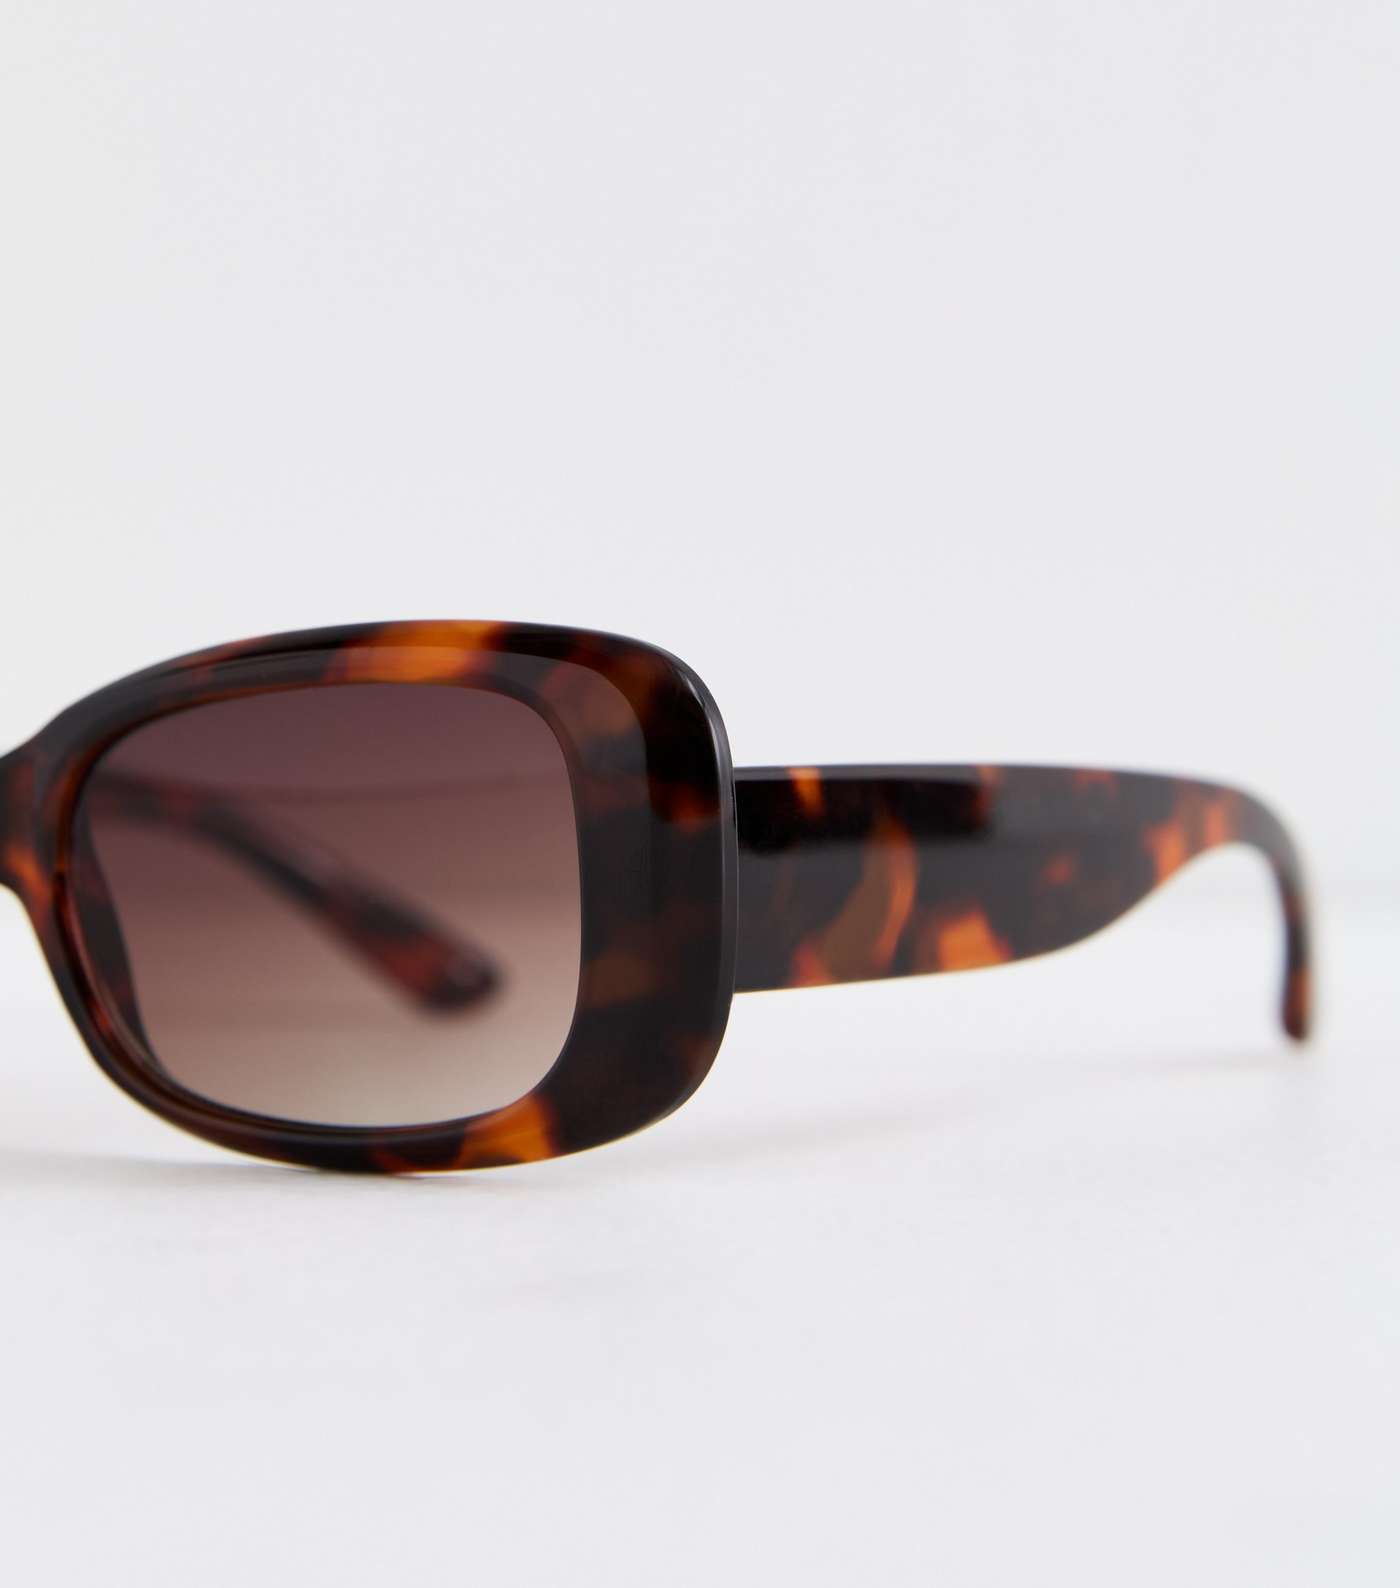 Dark Brown Tortoiseshell Effect Rectangle Frame Sunglasses Image 3